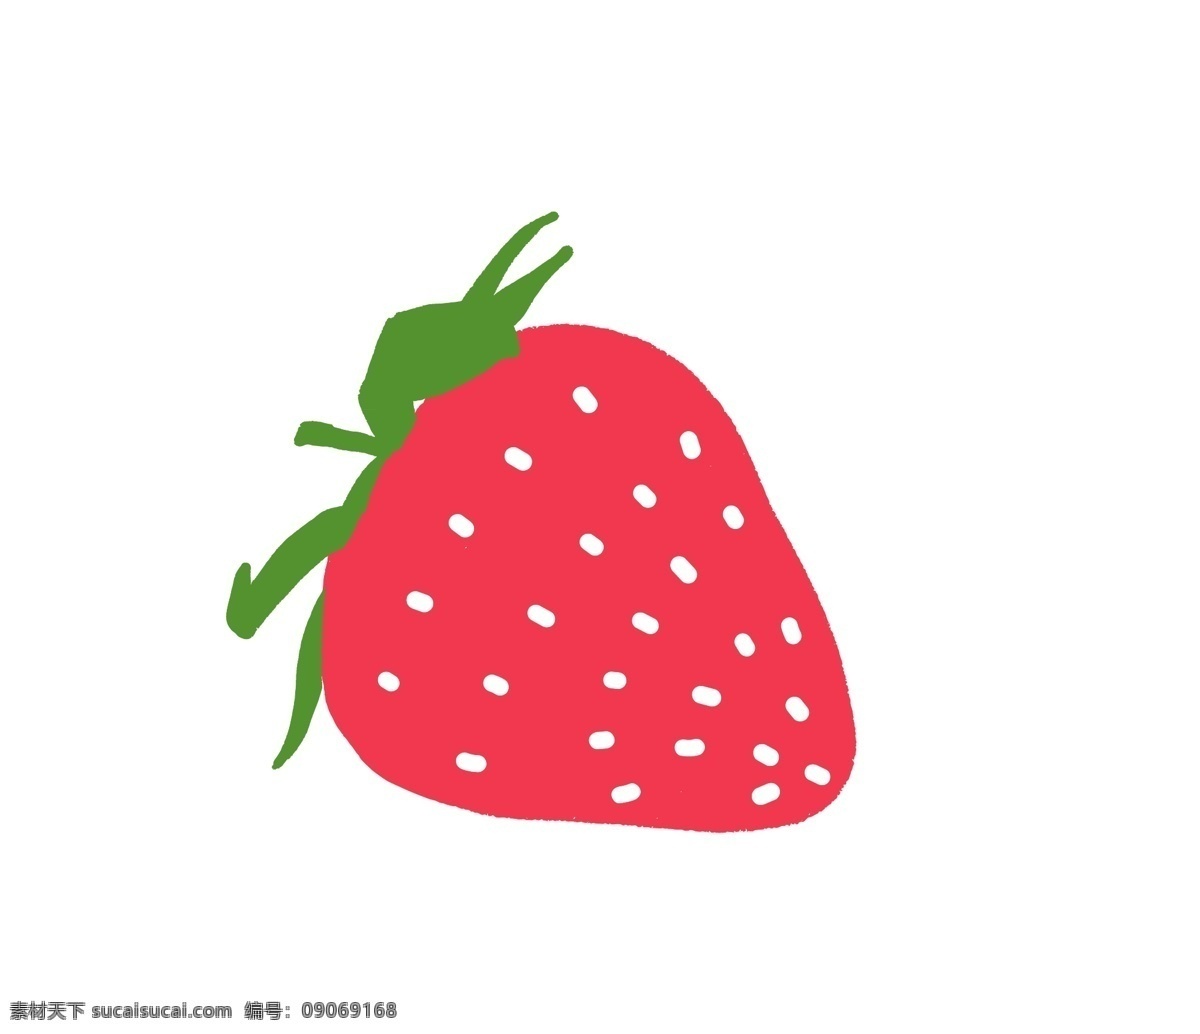 水果 红色草莓 水果店素材 水果海报素材 微信配图 手绘草莓 扁平风草莓 生物世界